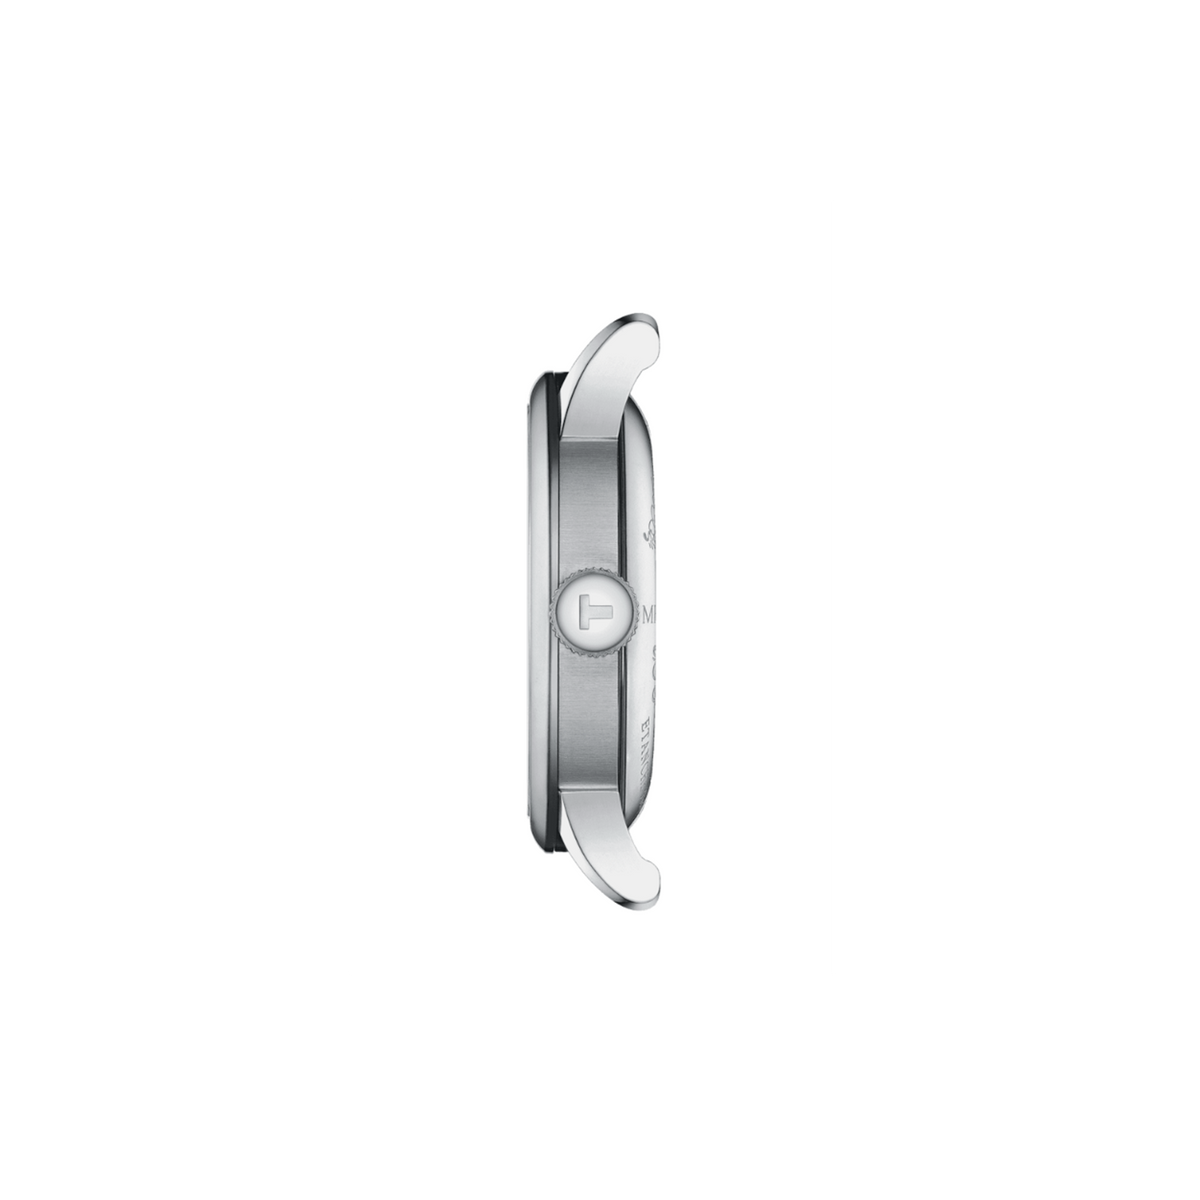 Tissot Le Locle Men's 39mm Automatic Watch T006.407.11.033.03